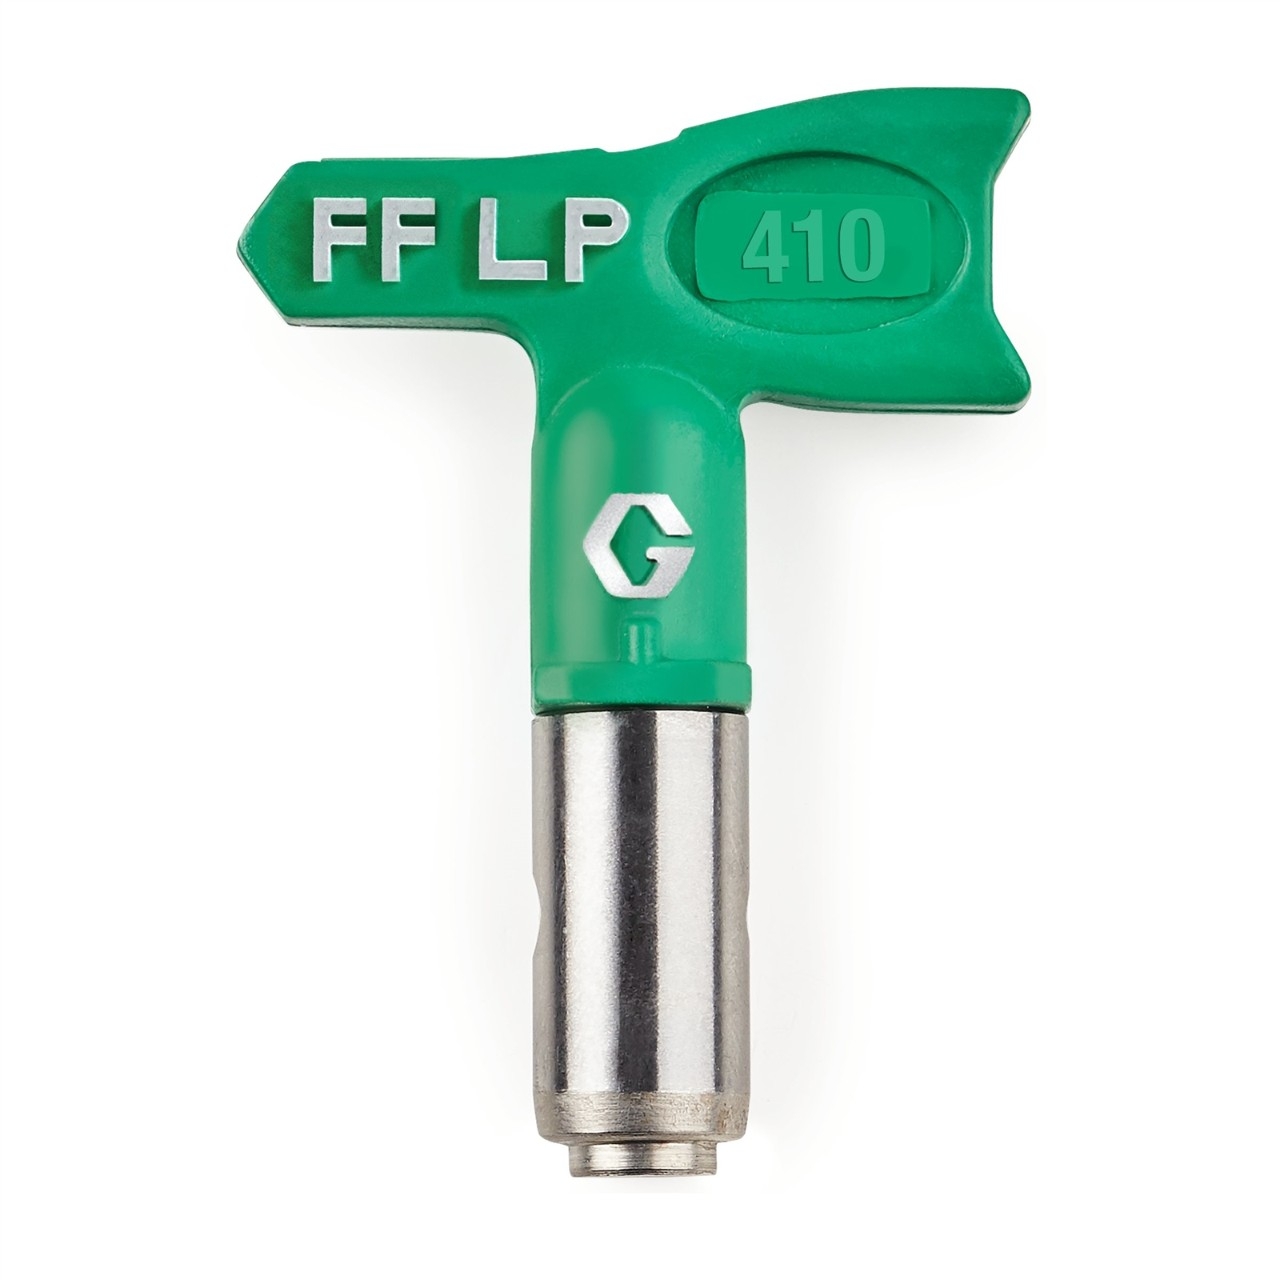 FFLP 410 - Duză FFLP SwitchTip 410, pentru finisaj fin la presiune scăzută, compatibilă cu RAC X.jpeg